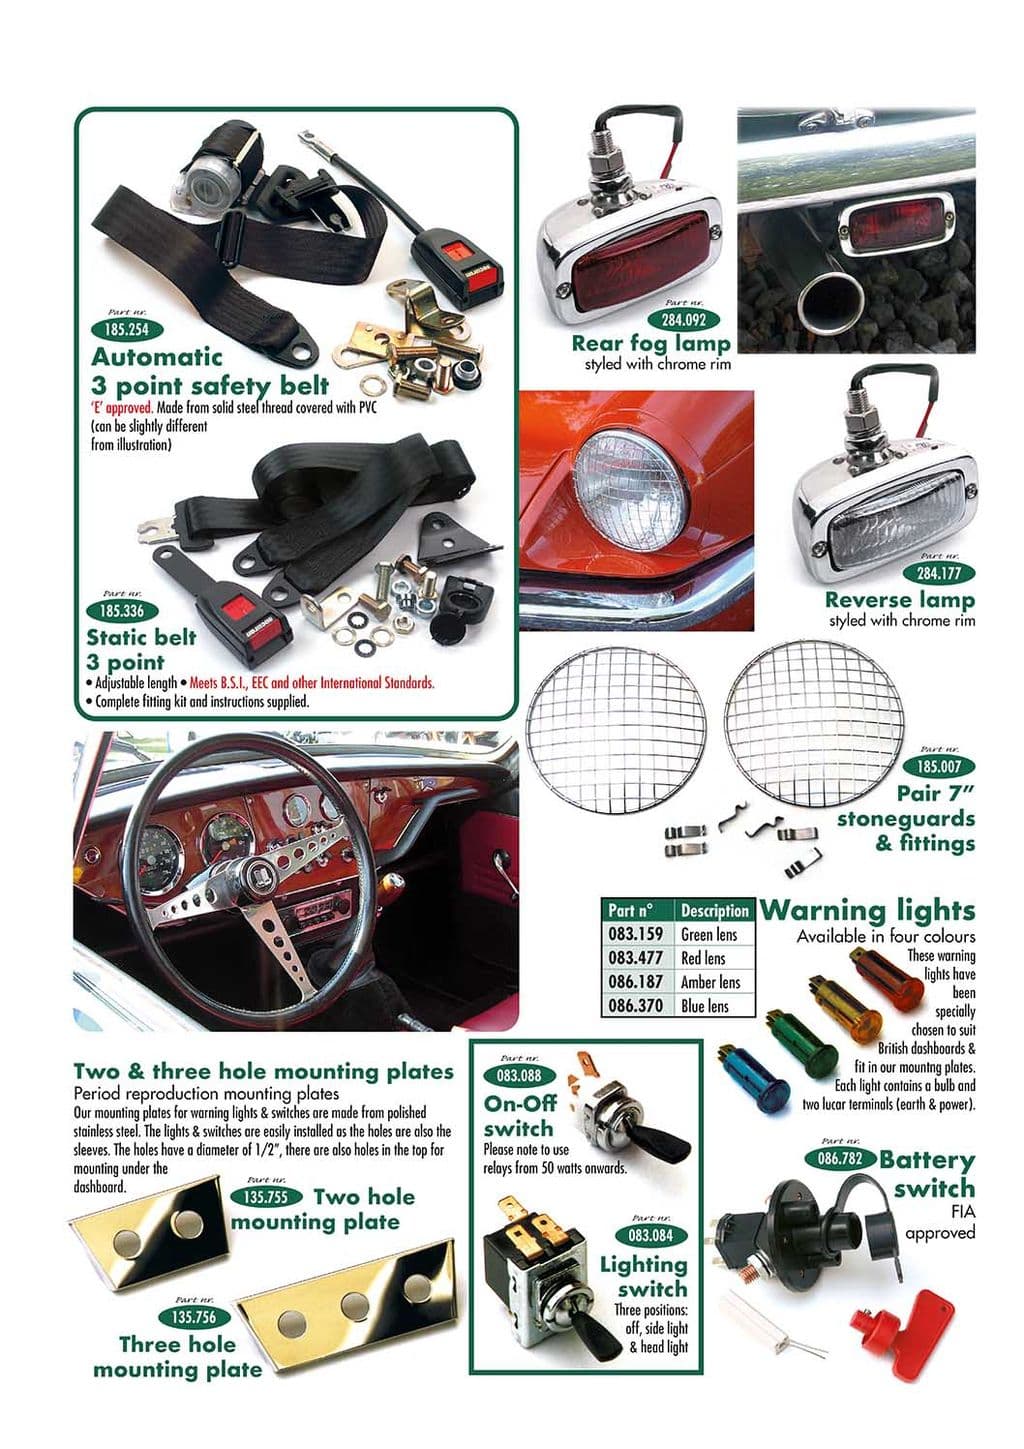 Safety parts & accessories - Safety parts - Maintenance & storage - Triumph GT6 MKI-III 1966-1973 - Safety parts & accessories - 1